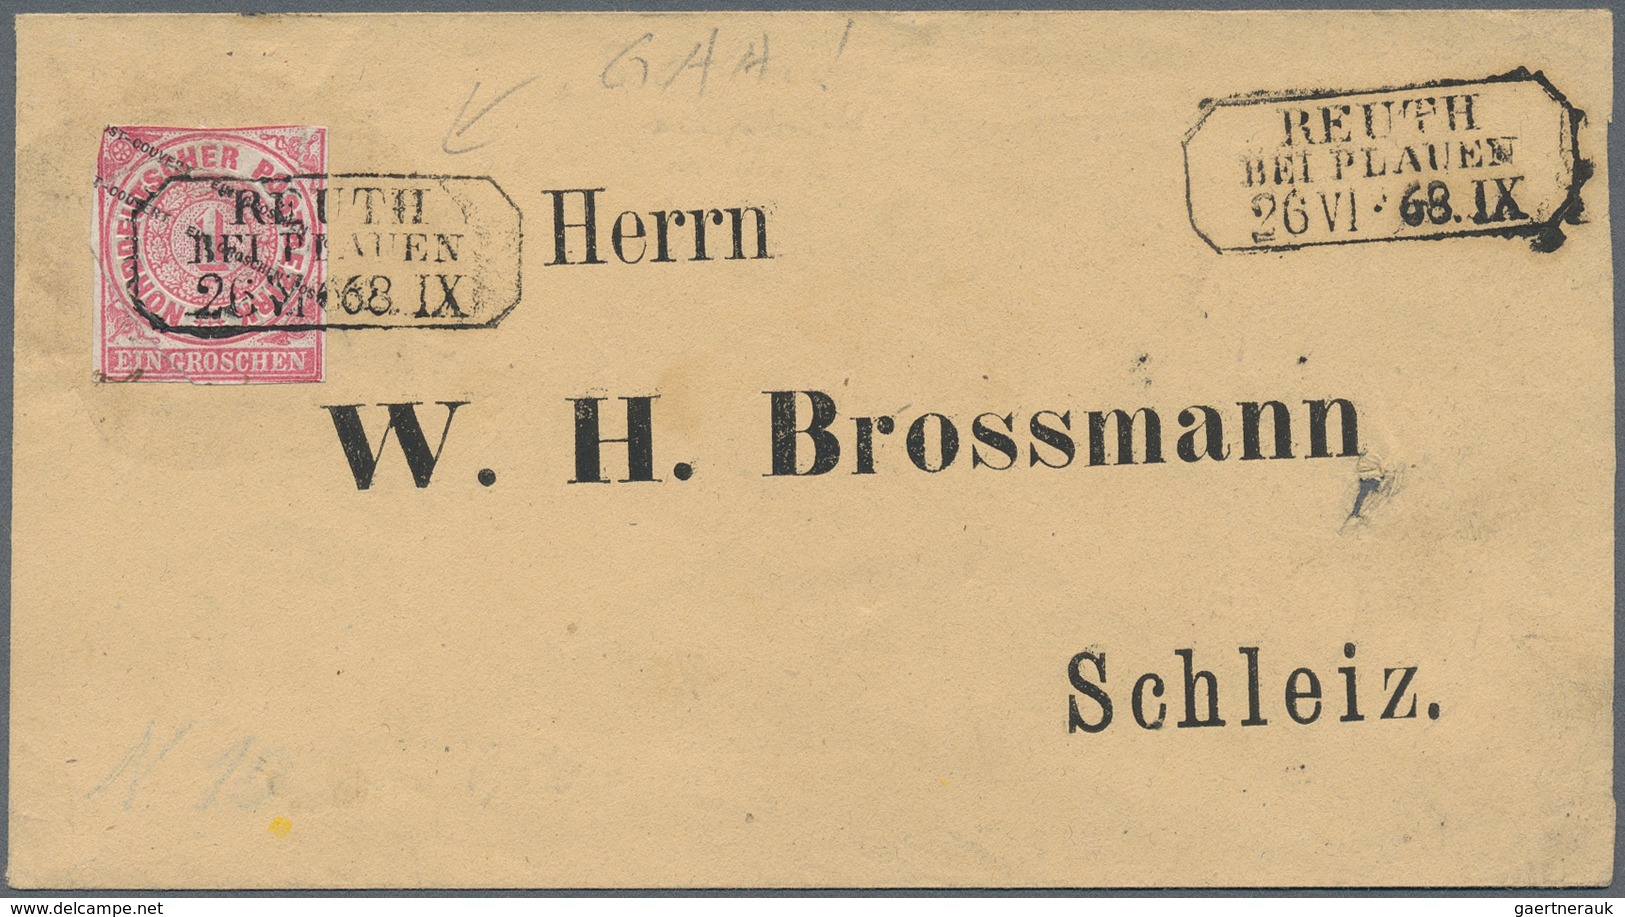 Norddeutscher Bund - Marken und Briefe: 1968/1871 (ca.), Partie von ca. 160 Belegen, dabei Bunt-, Fa